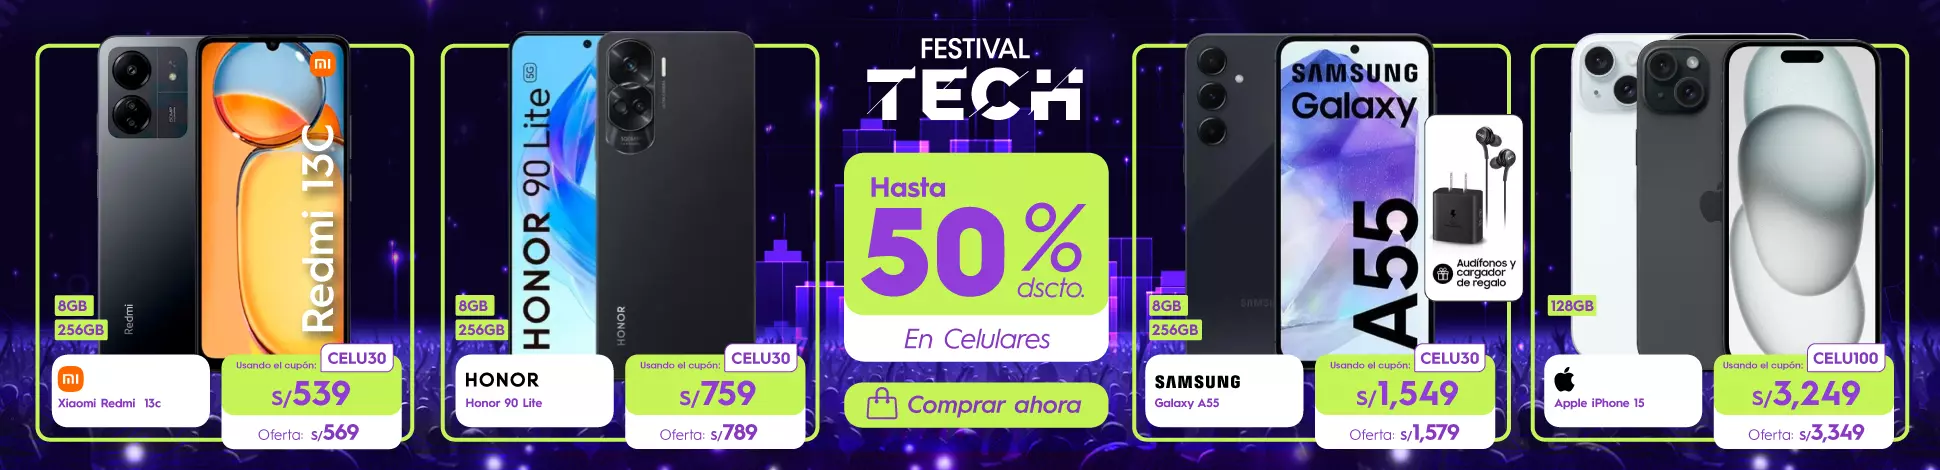 HS-festival-tech-2024b-celulares.webp | Juntoz.com